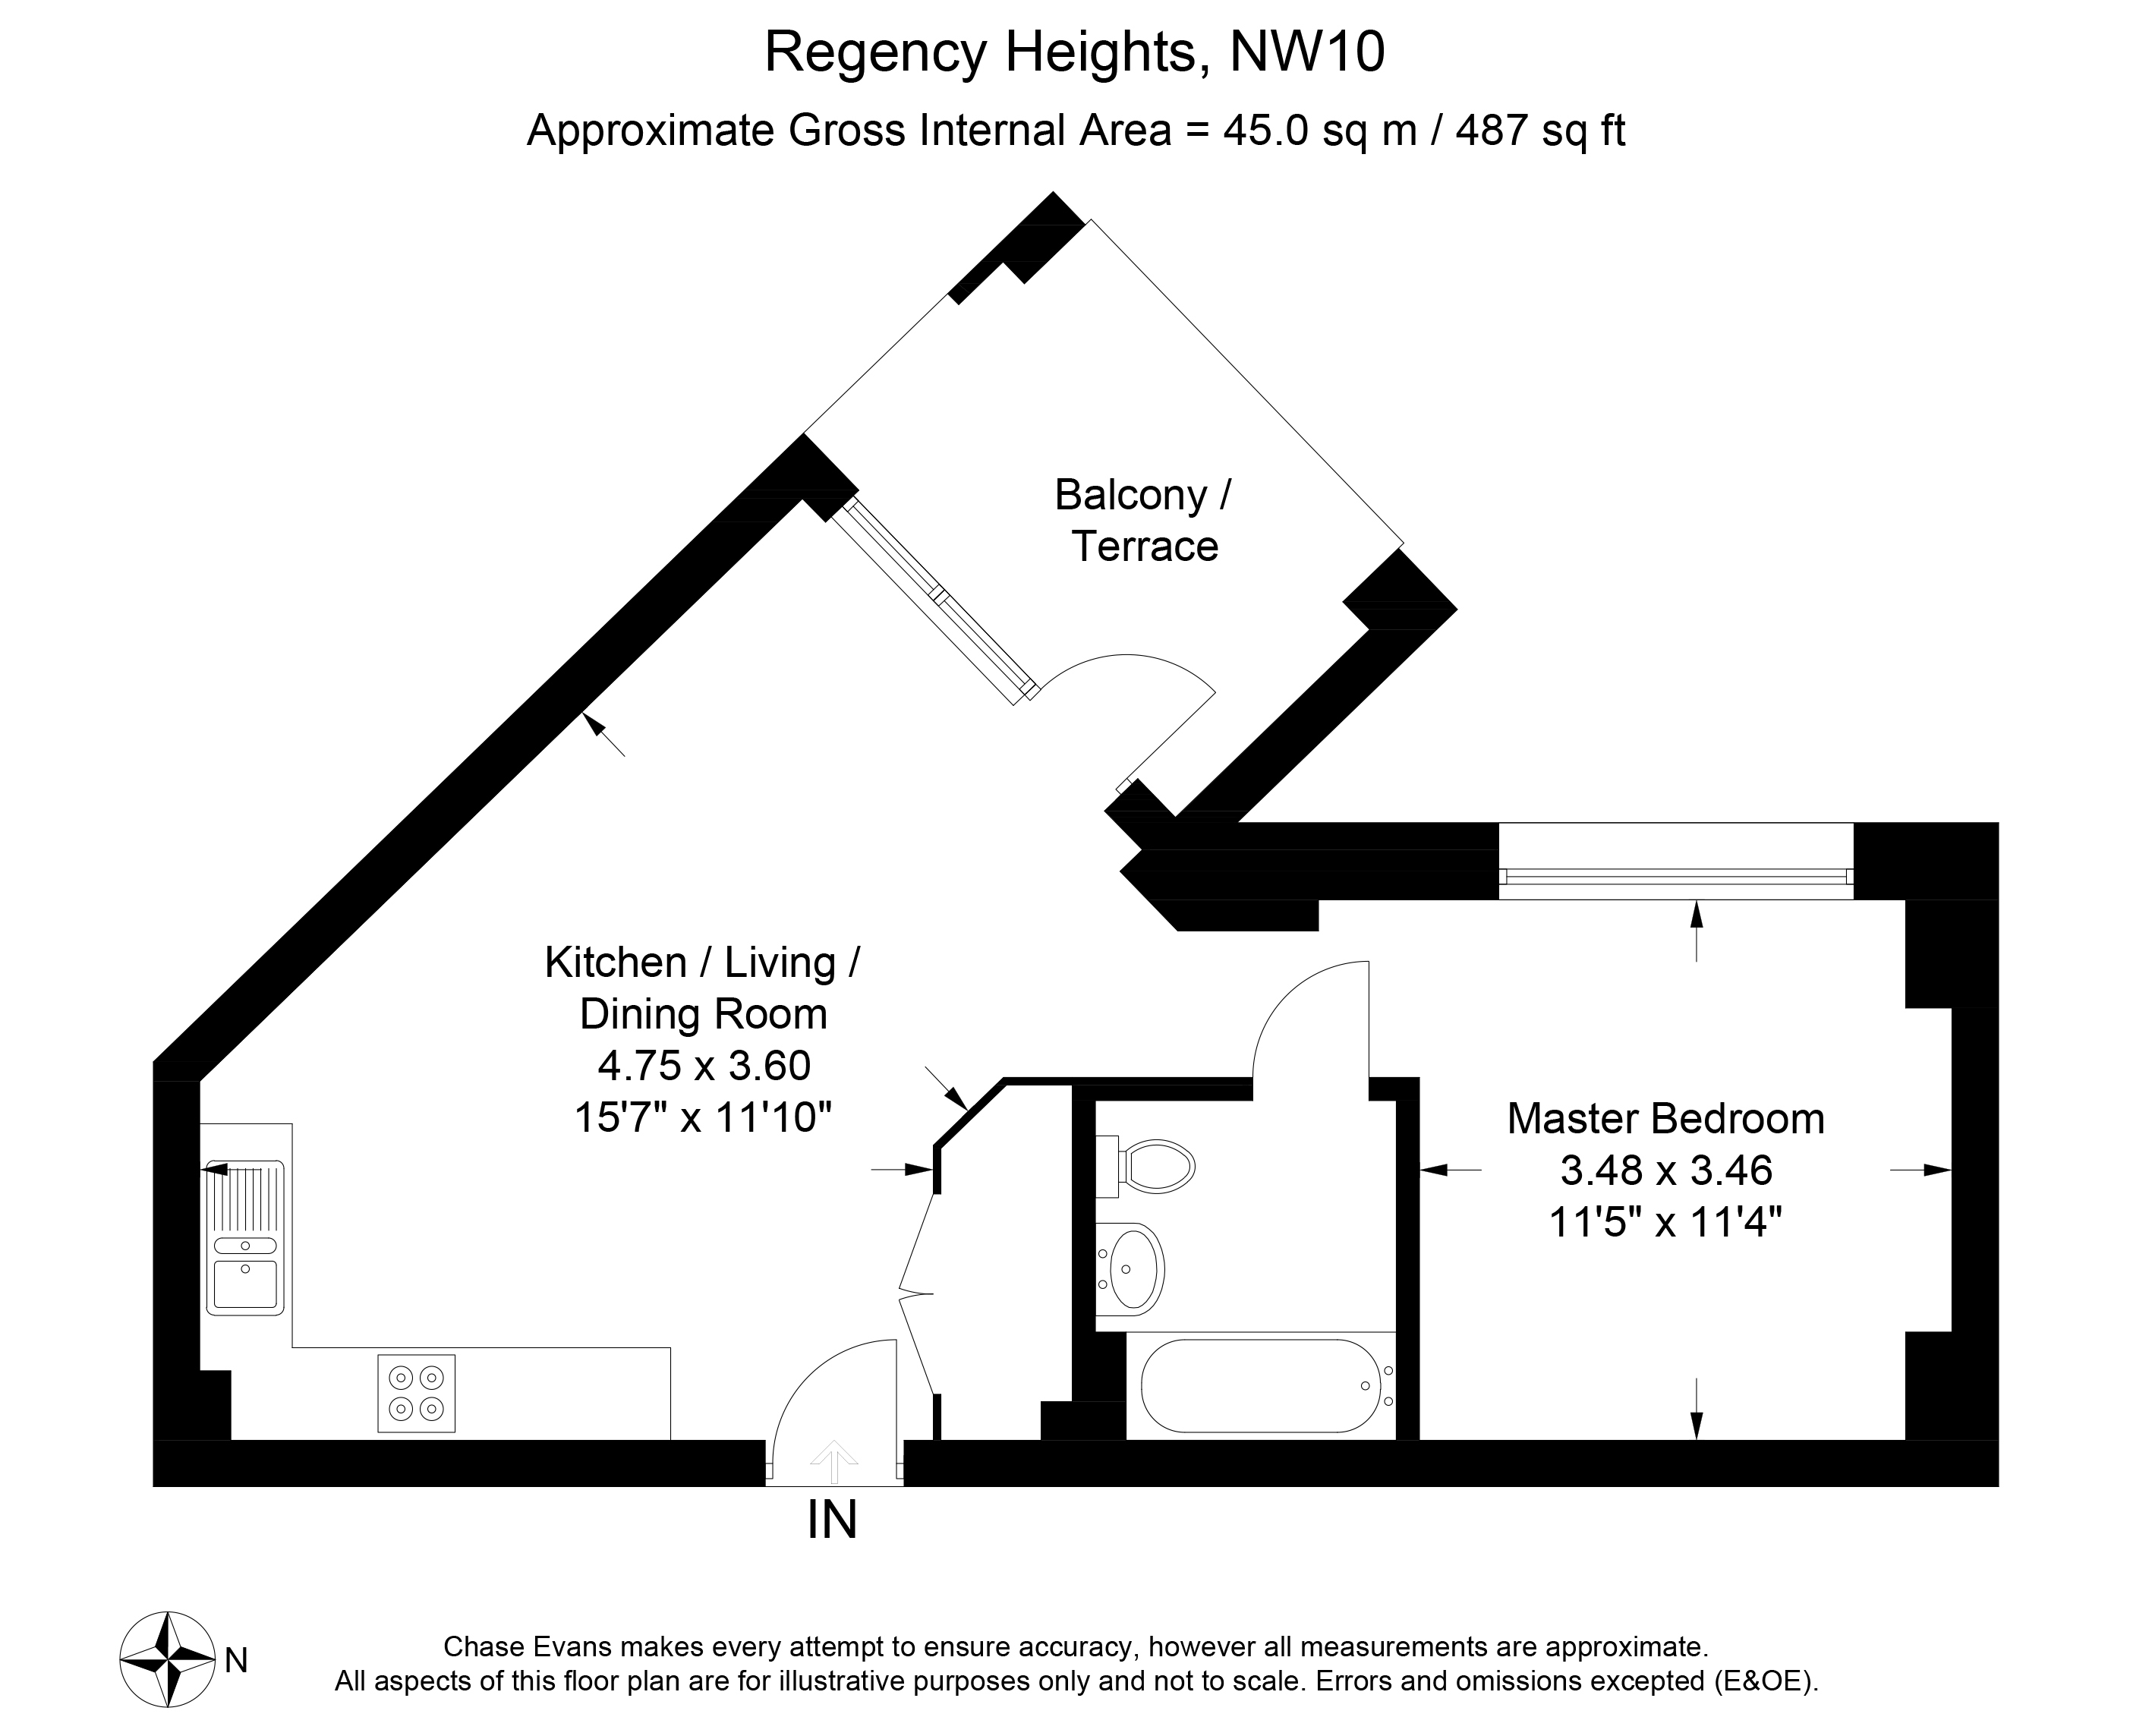 Regency Heights Studio apartments